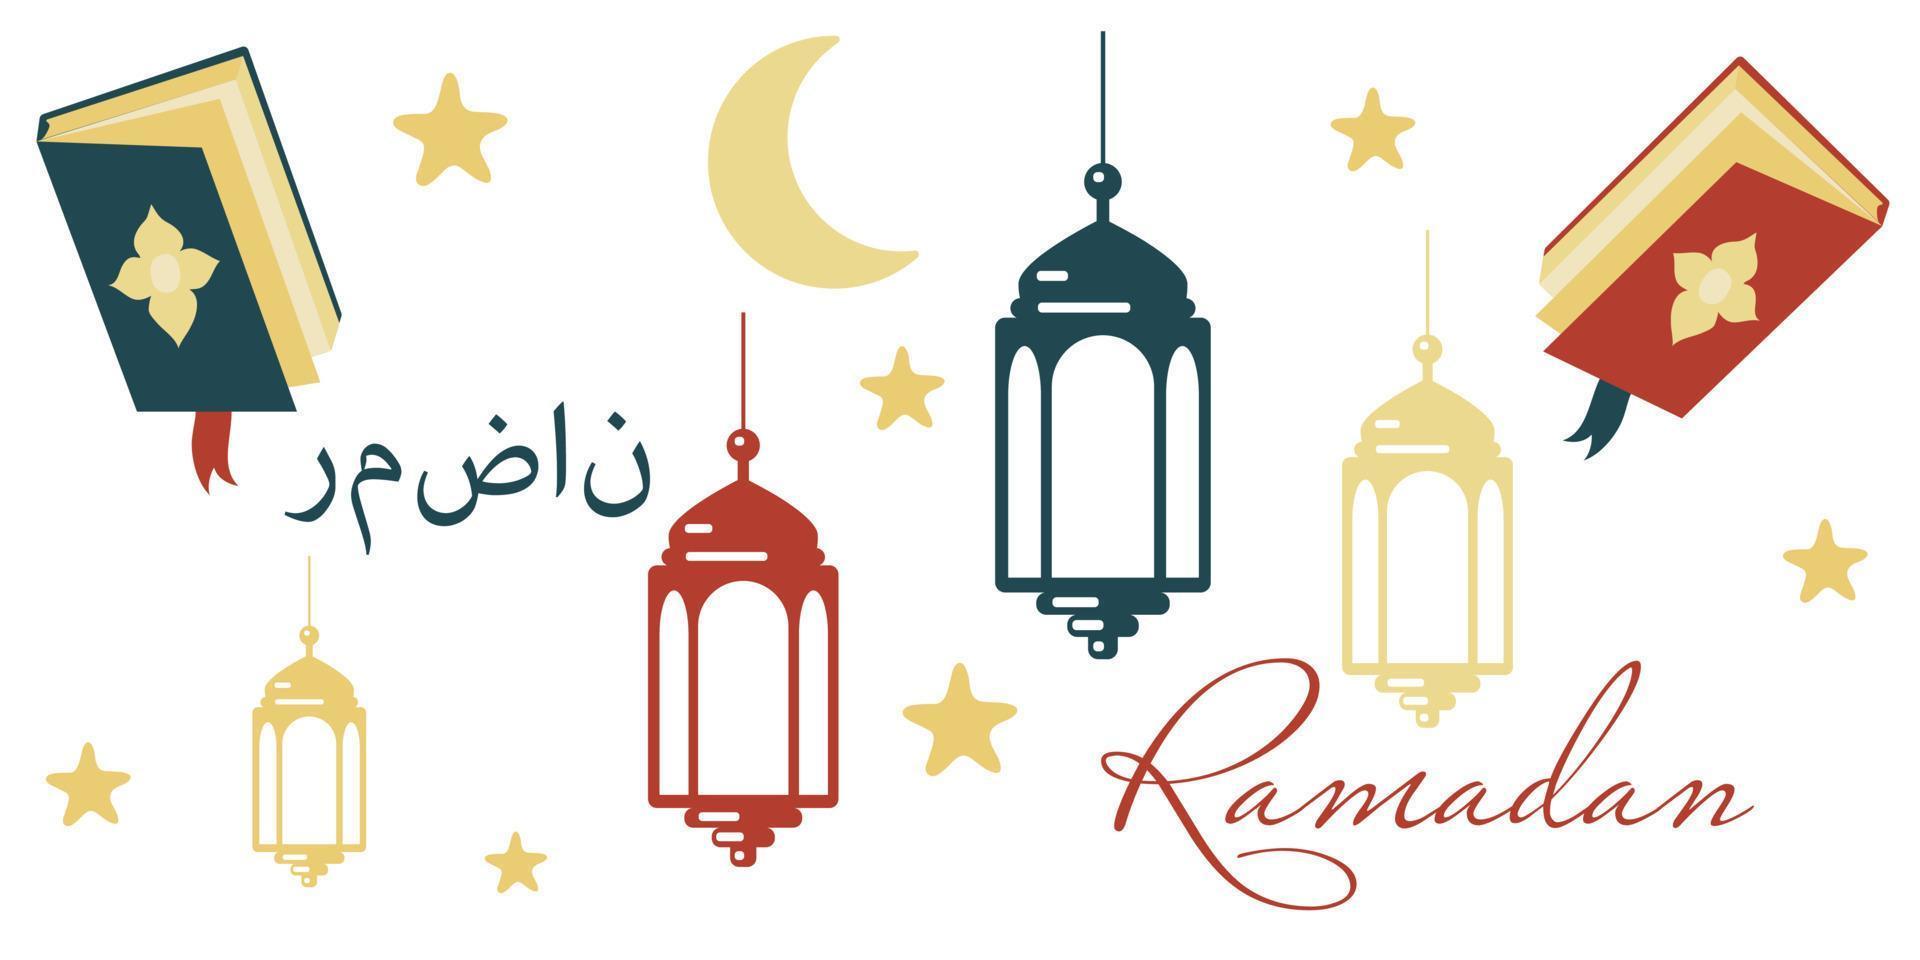 een reeks van elementen van Arabisch ornament lantaarn, maan, sterren, boek. ontwerp elementen van de Ramadan karim groet sjabloon. lantaarn, maan, sterren, schets van de nacht stad van moskeeën. stickers vector